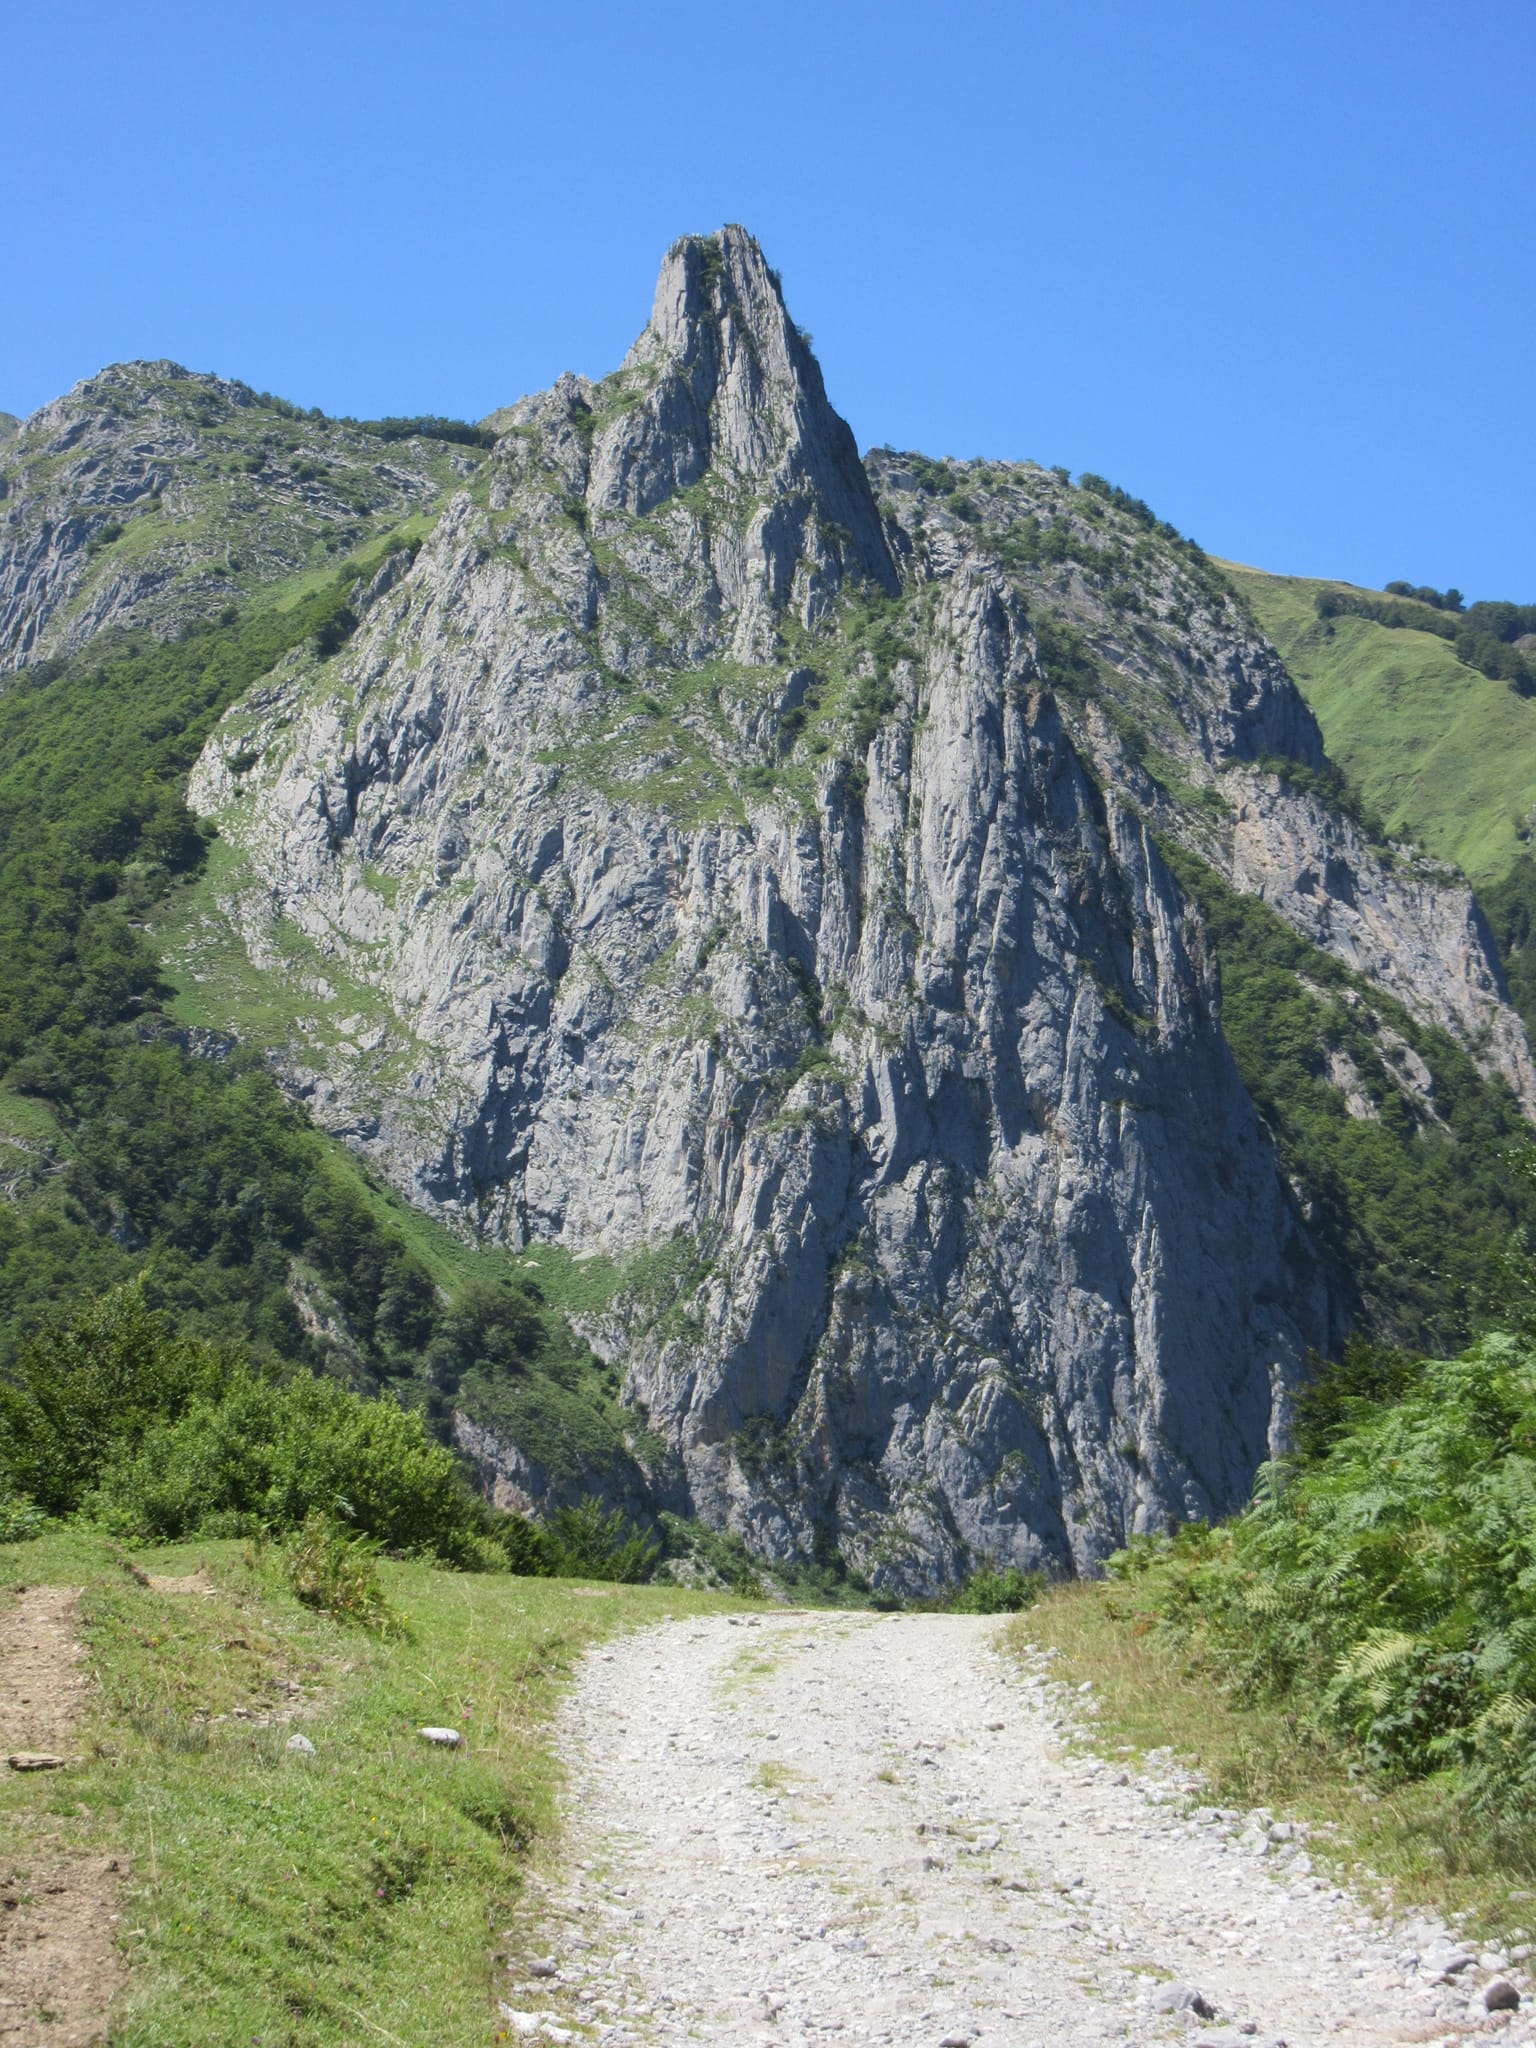 Distinctive rocky spire above the Plateau de Sanchèse near Lescun.